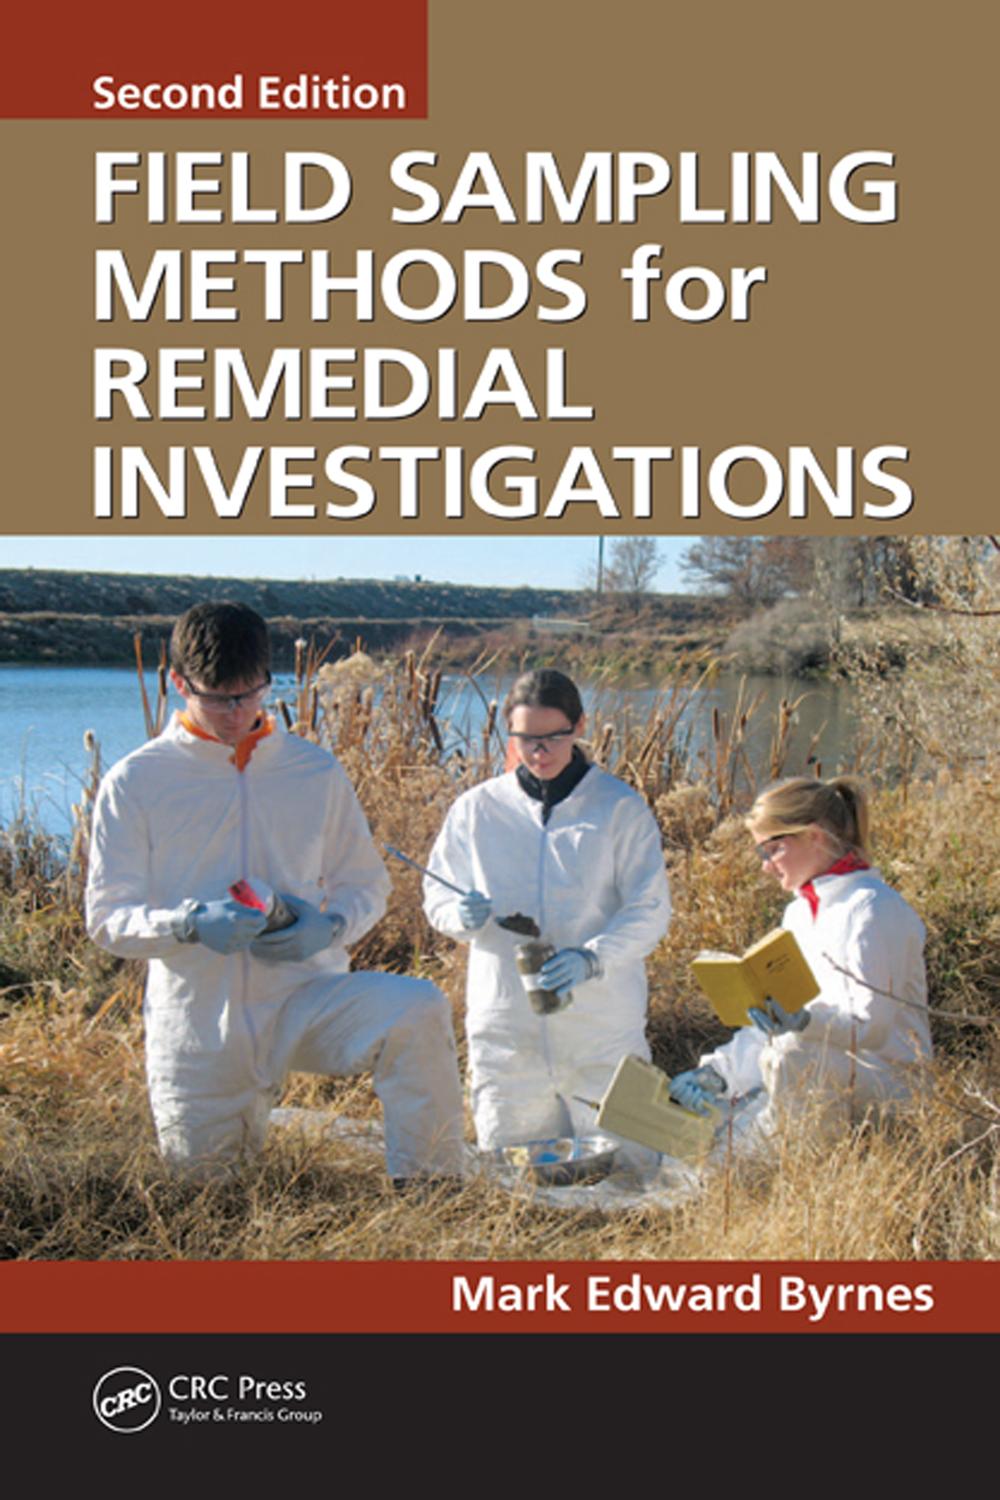 Field Sampling Methods for Remedial Investigations - Mark Edward Byrnes